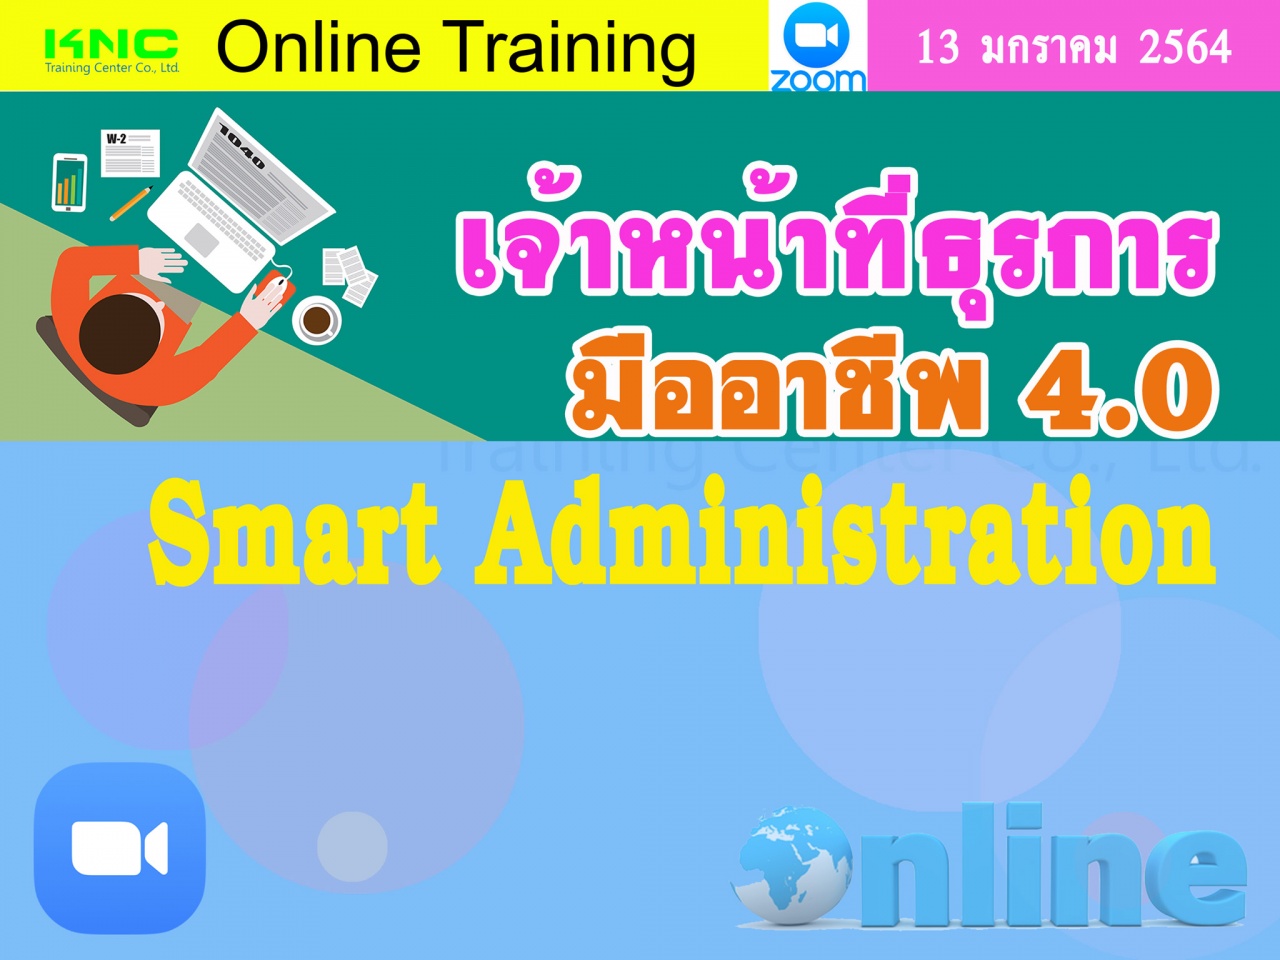 สัมมนา Online : เจ้าหน้าที่ธุรการมืออาชีพ ยุค 4.0 (Smart Administration)